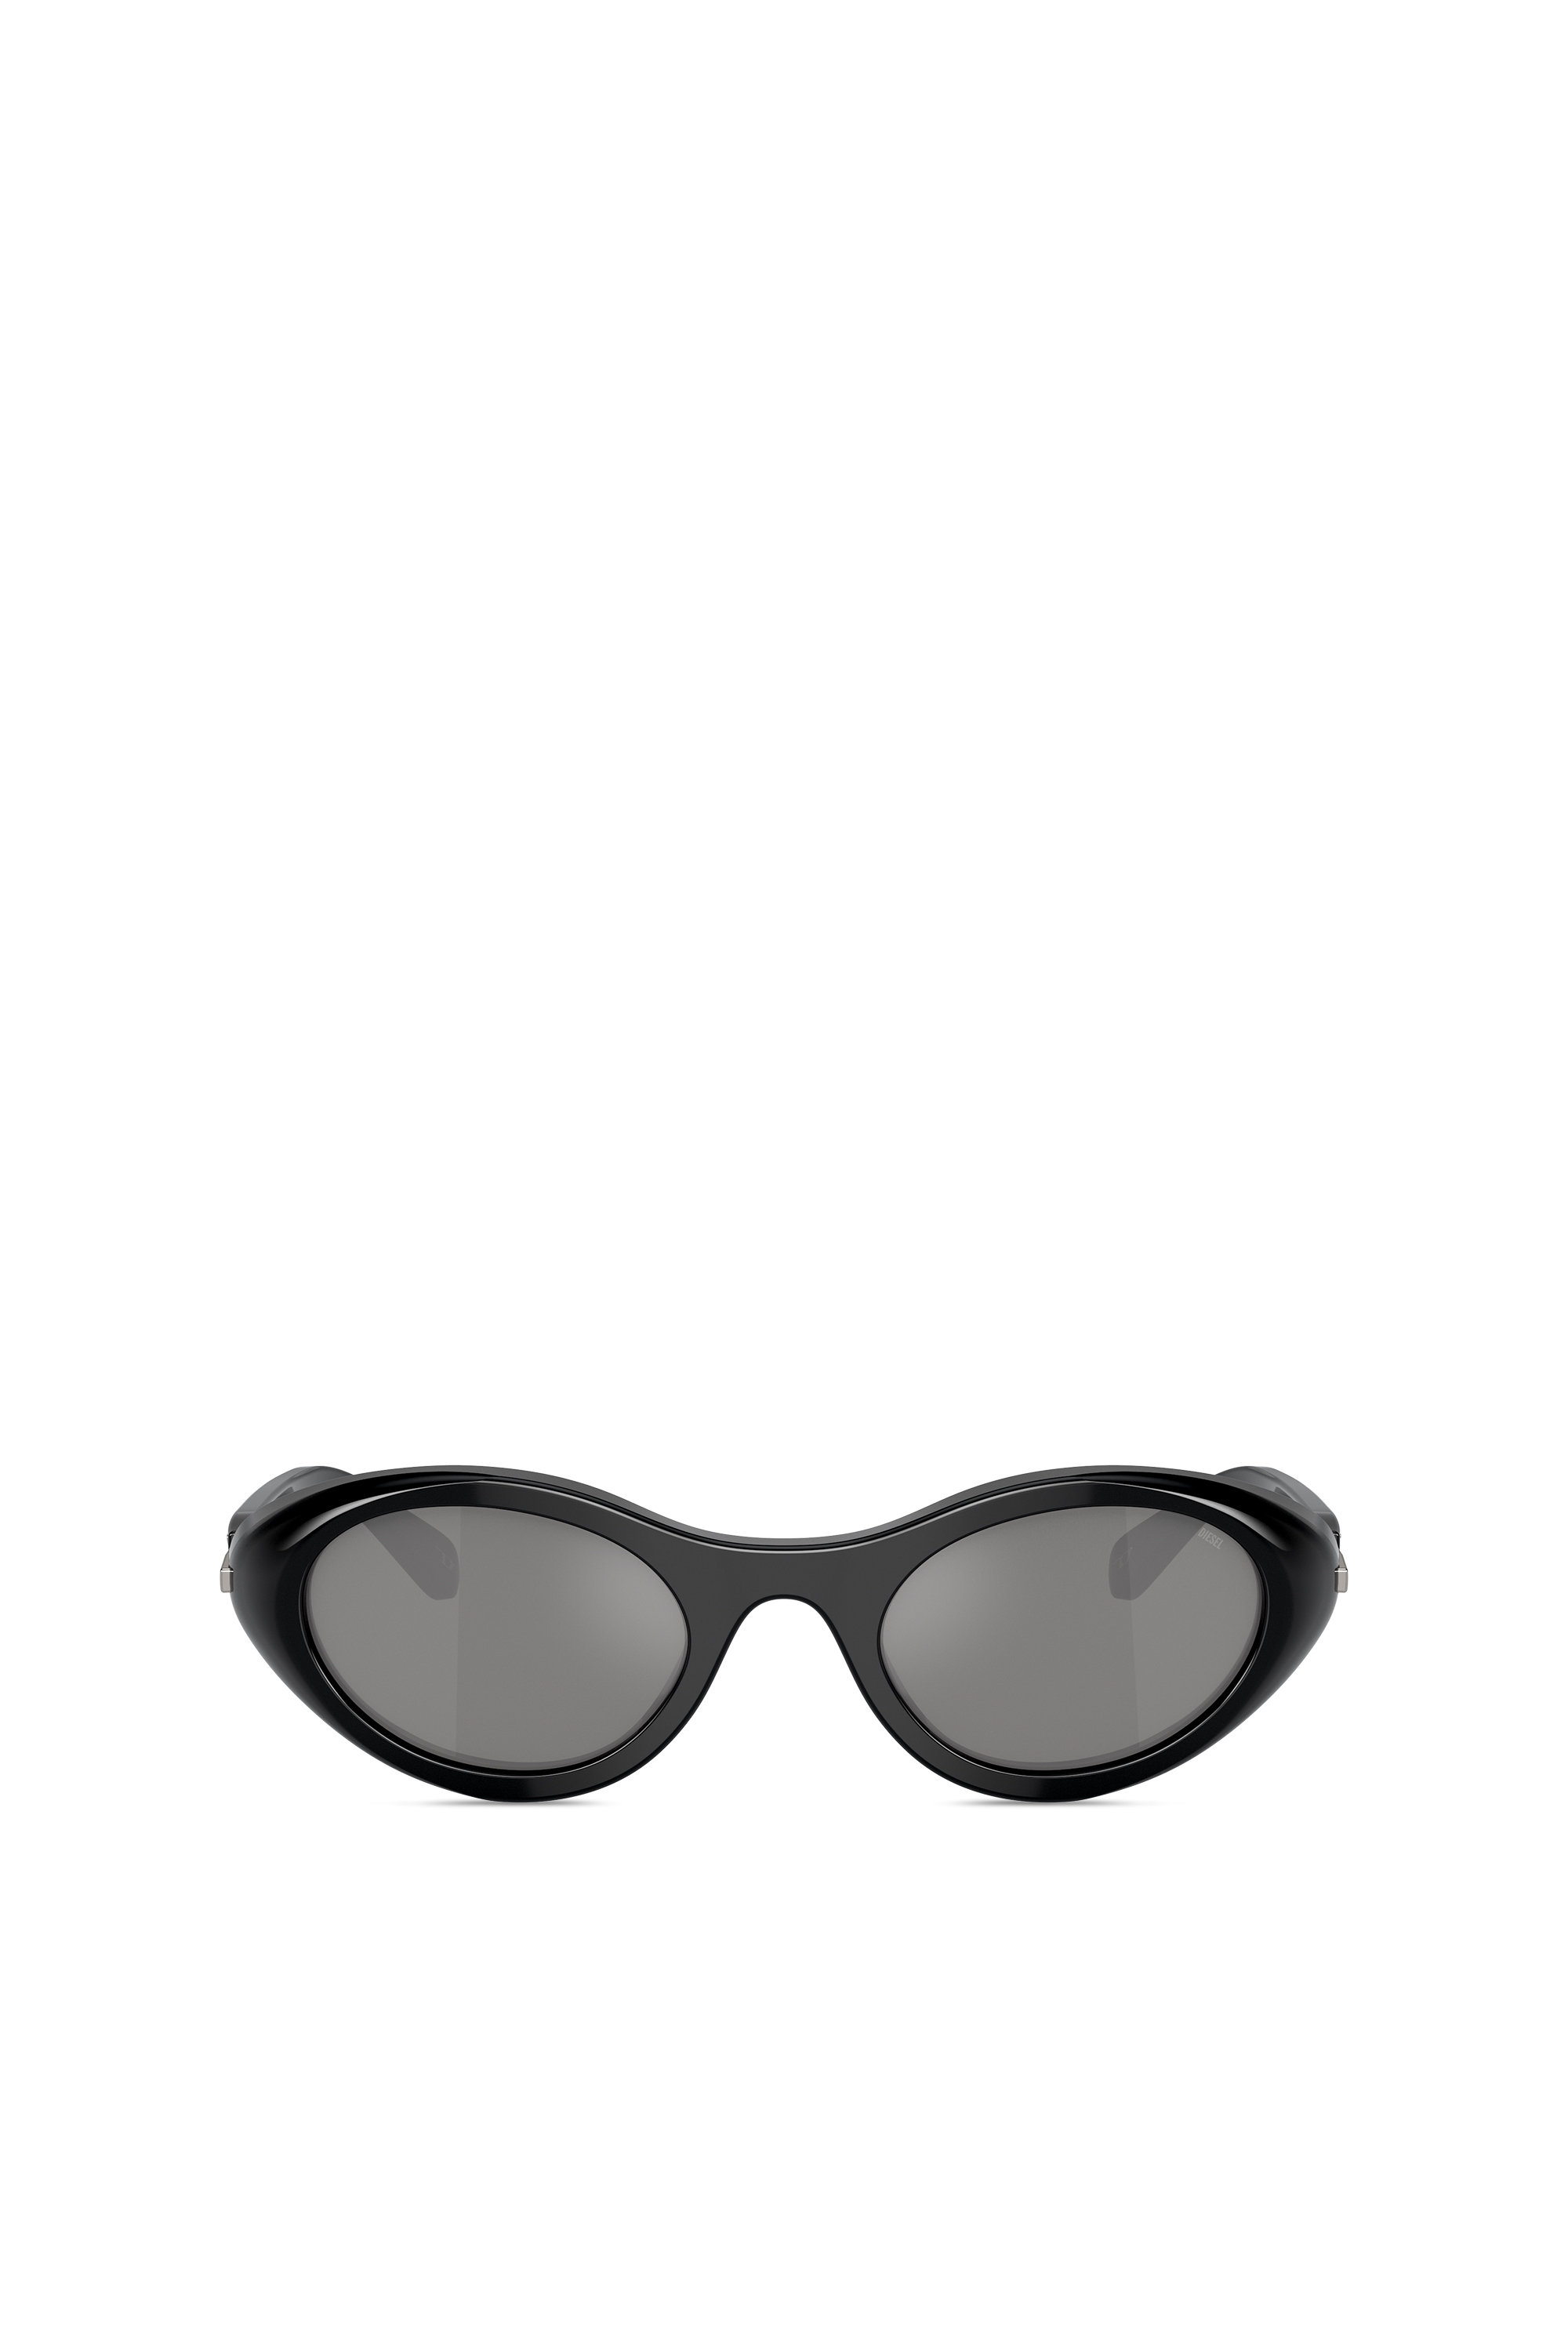 Diesel - Gafas de sol envolventes - Gafas de sol - Unisex - Negro